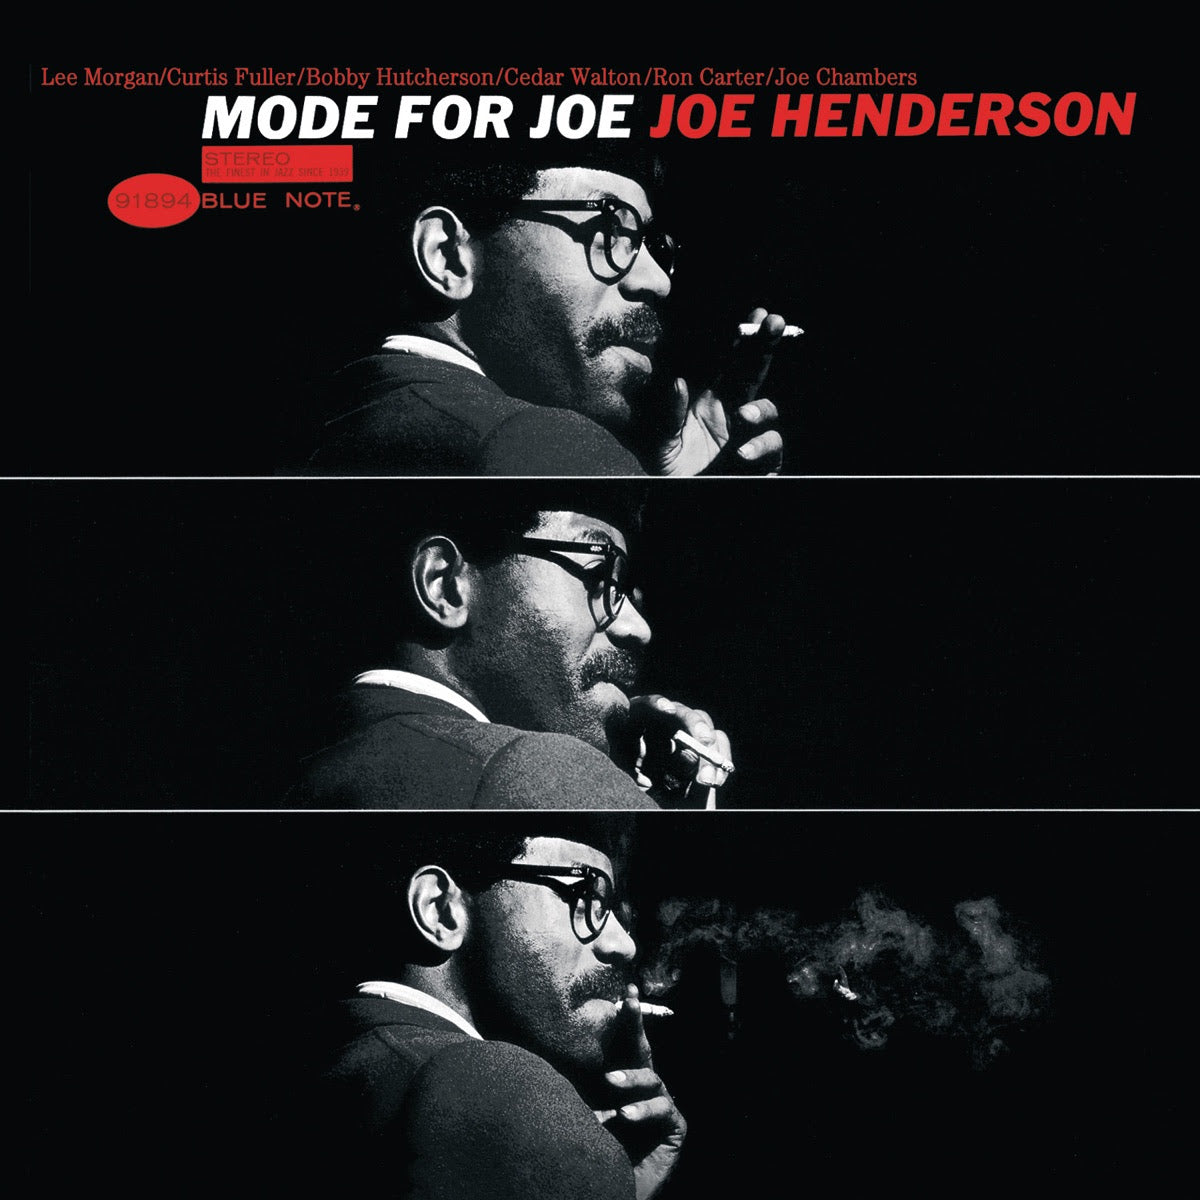 Joe Henderson - Mode For Joe | Buy the Vinyl LP from Flying Nun Records